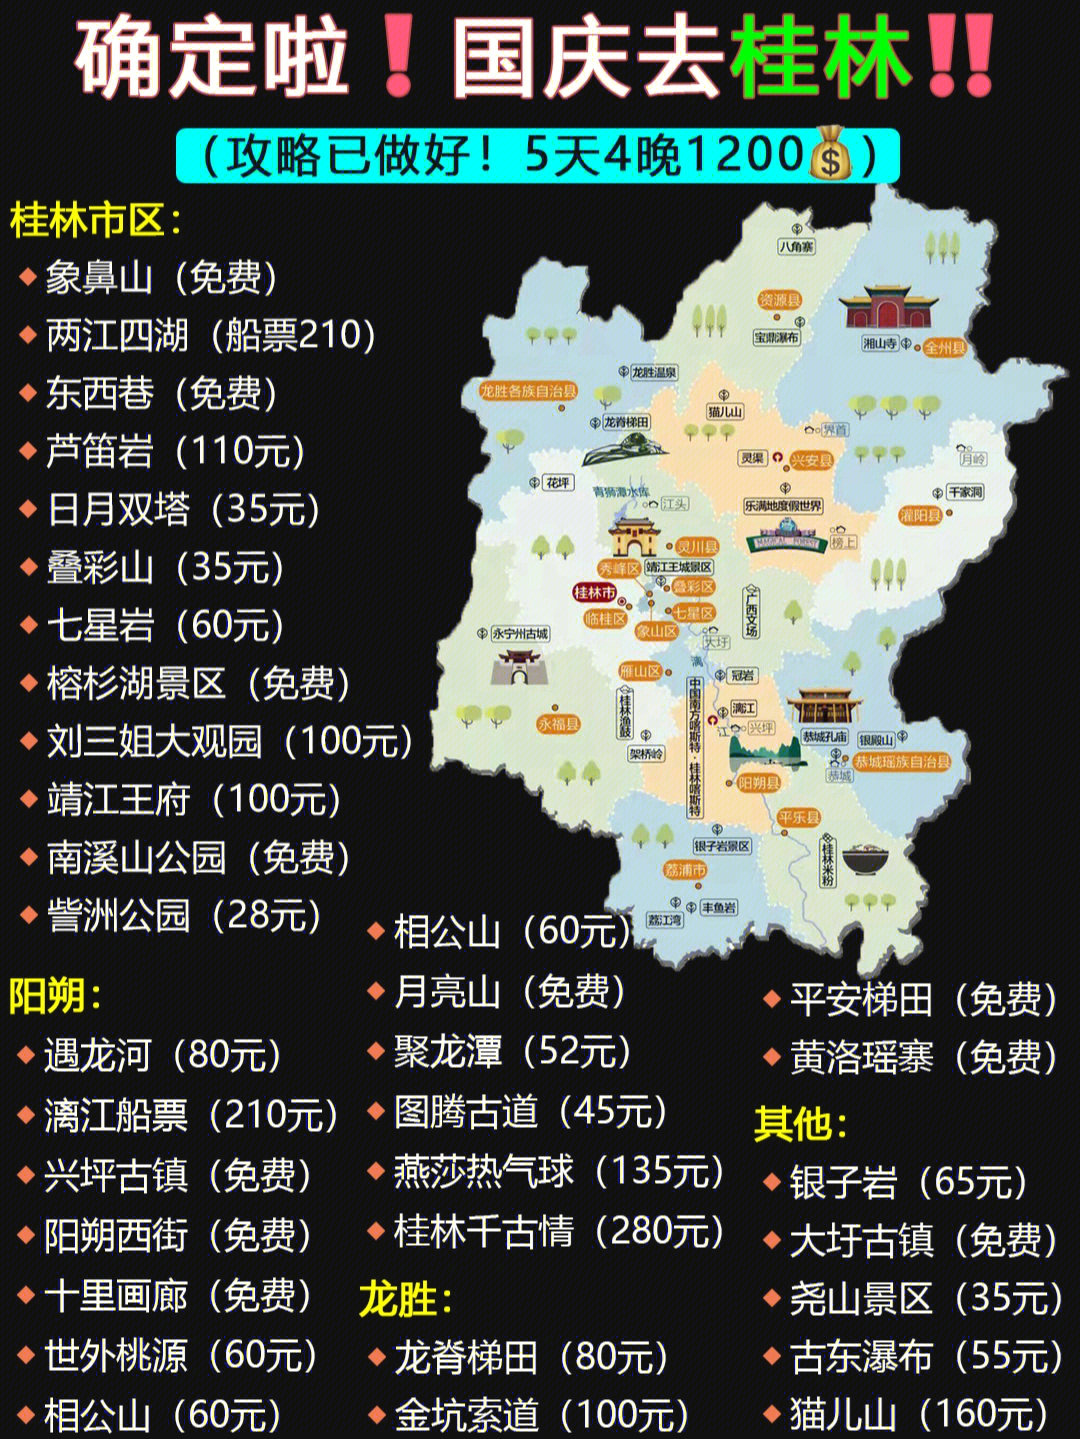 92姐妹国庆去桂林旅游一定要提前防雷避坑